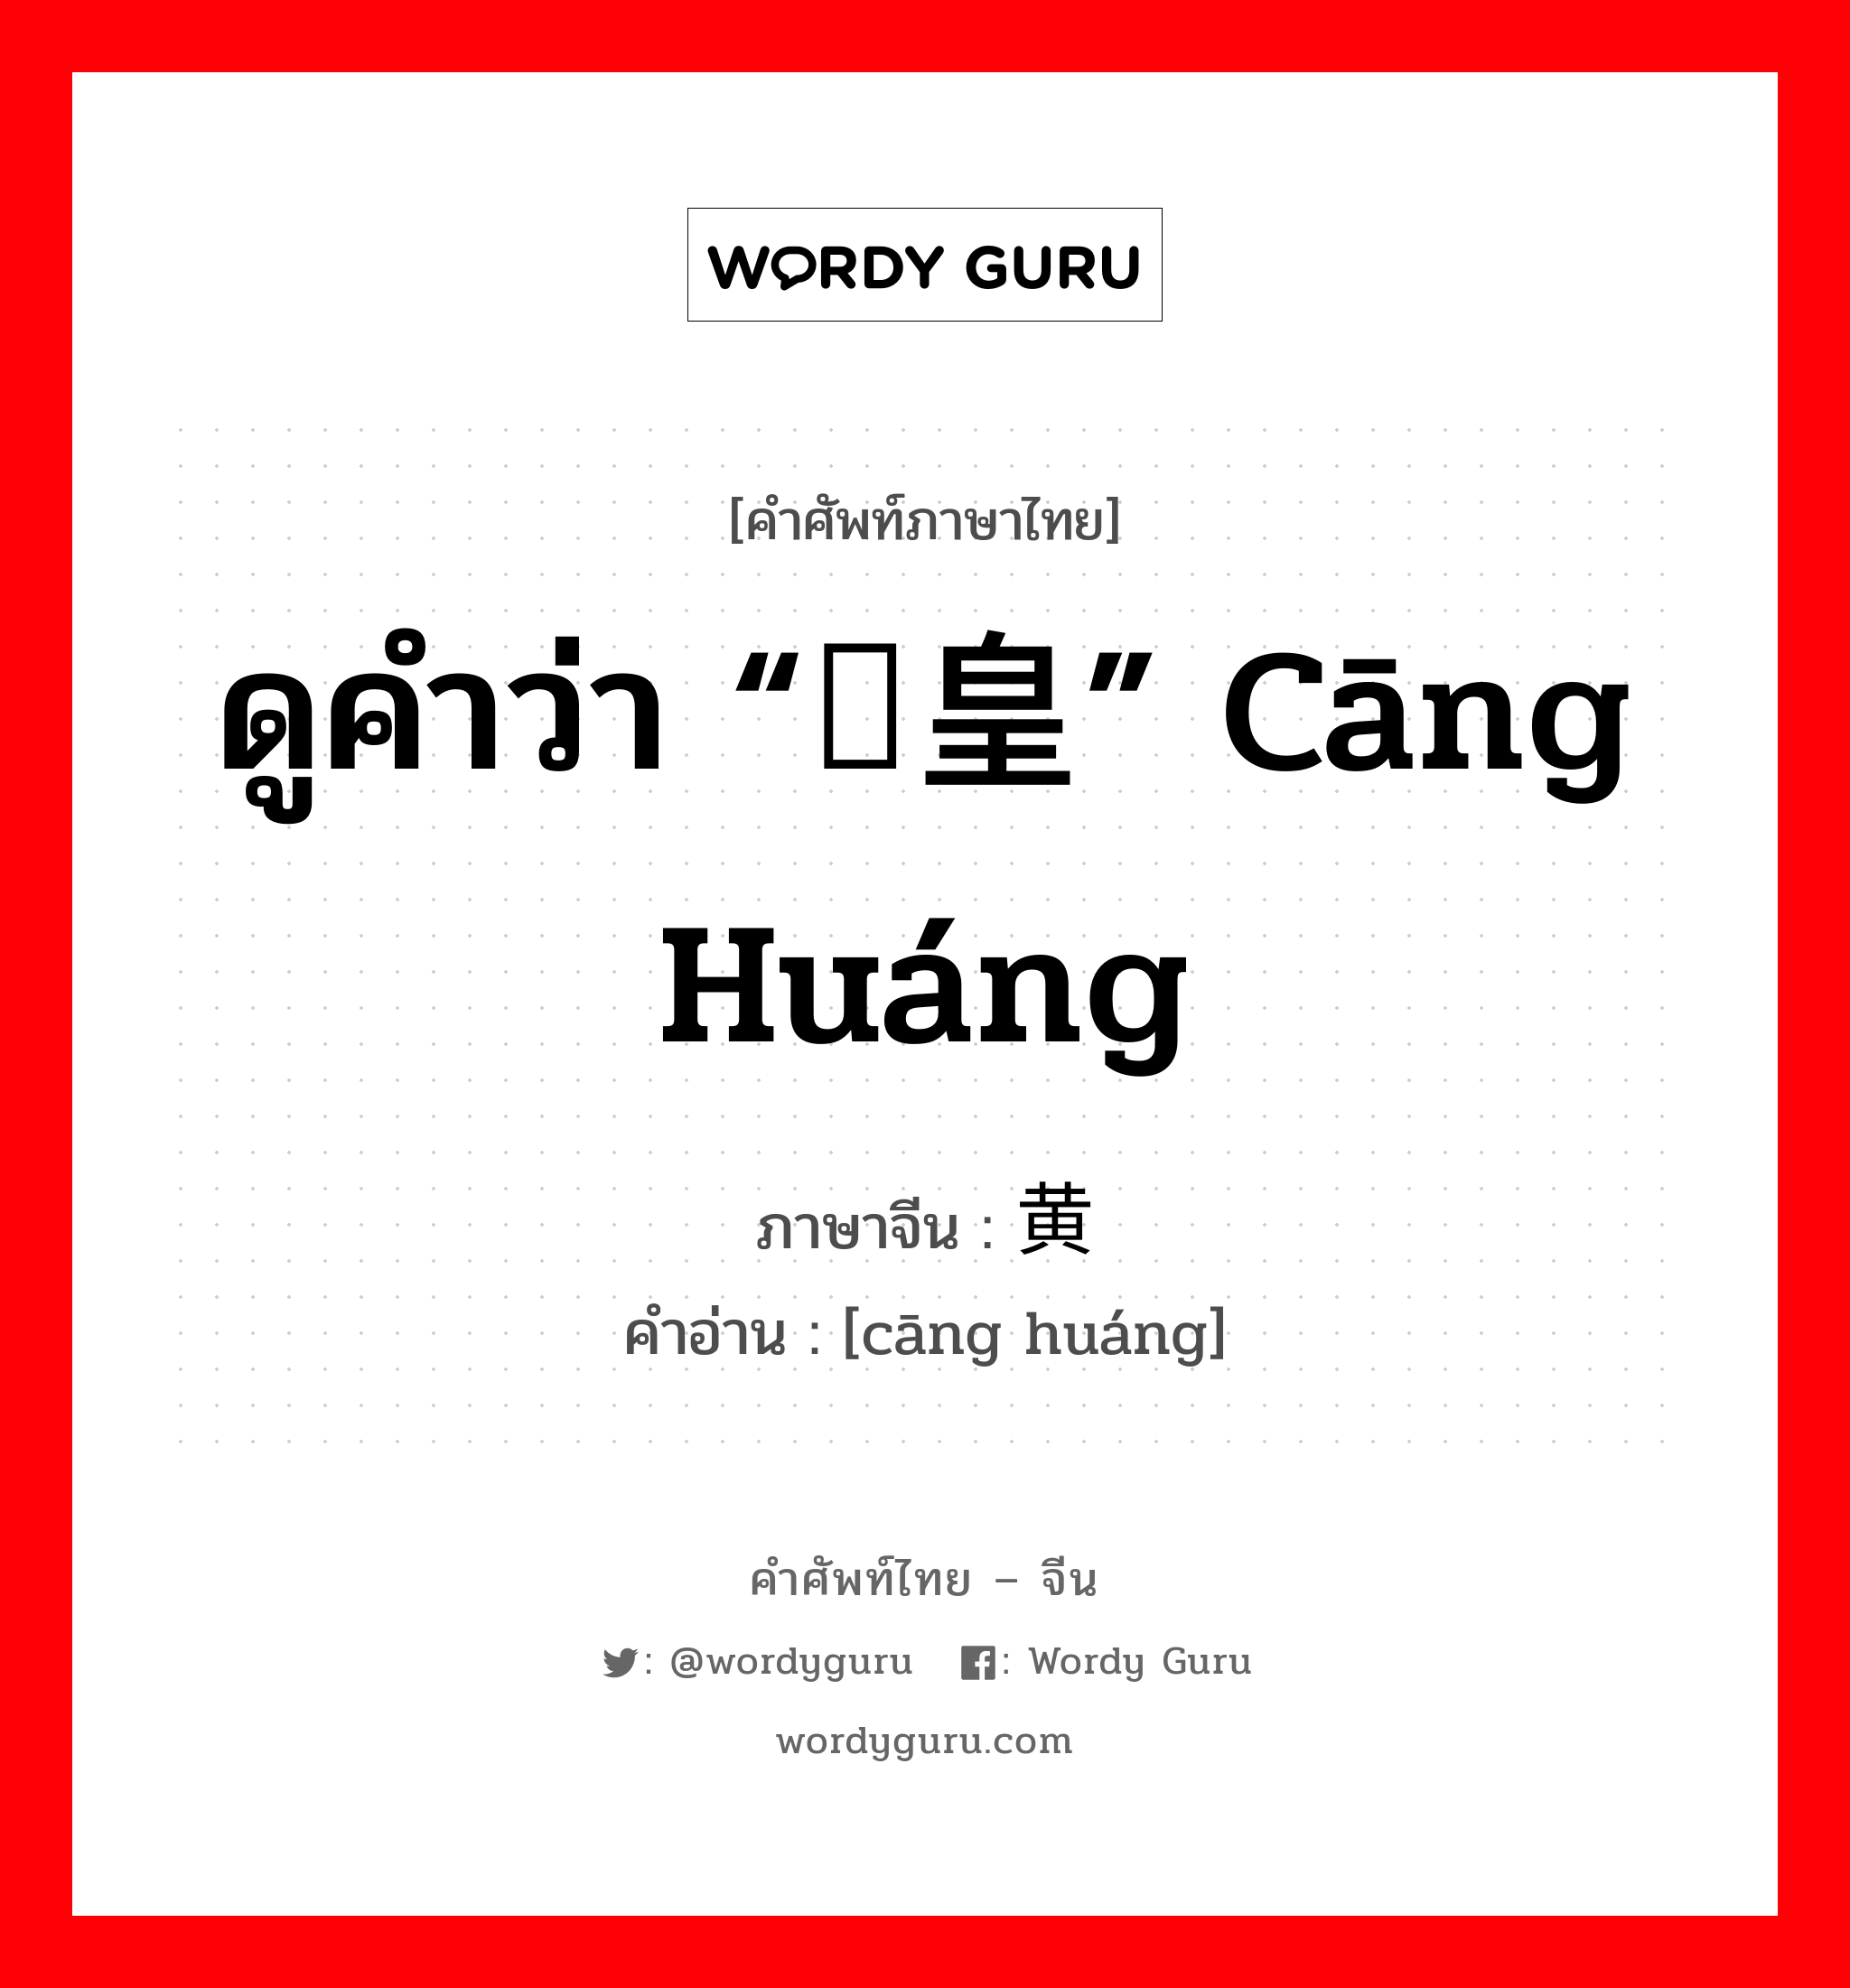 ดูคำว่า “仓皇” cāng huáng ภาษาจีนคืออะไร, คำศัพท์ภาษาไทย - จีน ดูคำว่า “仓皇” cāng huáng ภาษาจีน 仓黄 คำอ่าน [cāng huáng]